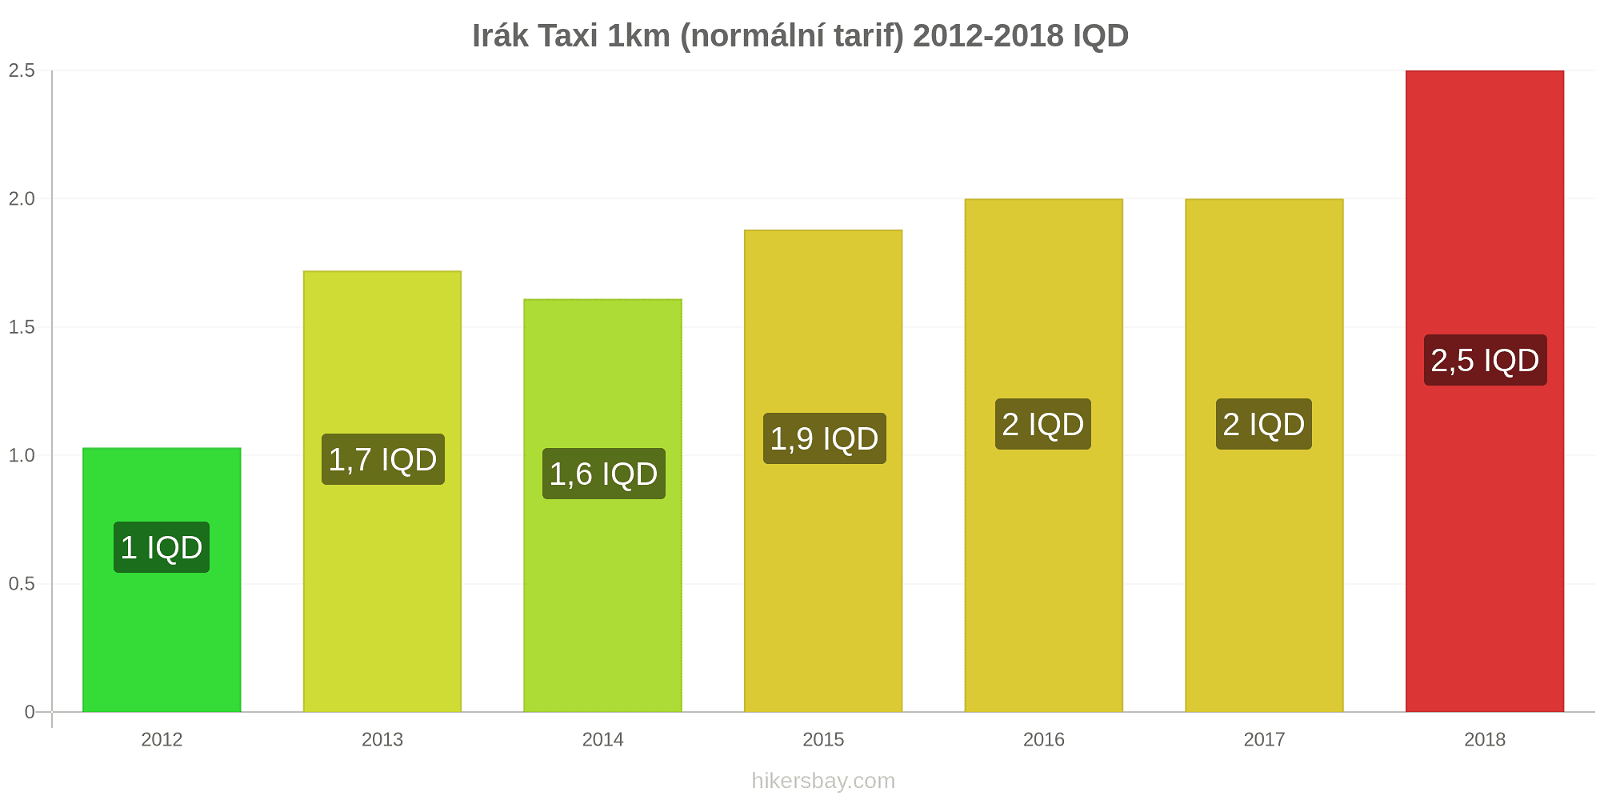 Irák změny cen Taxi 1km (normální tarif) hikersbay.com